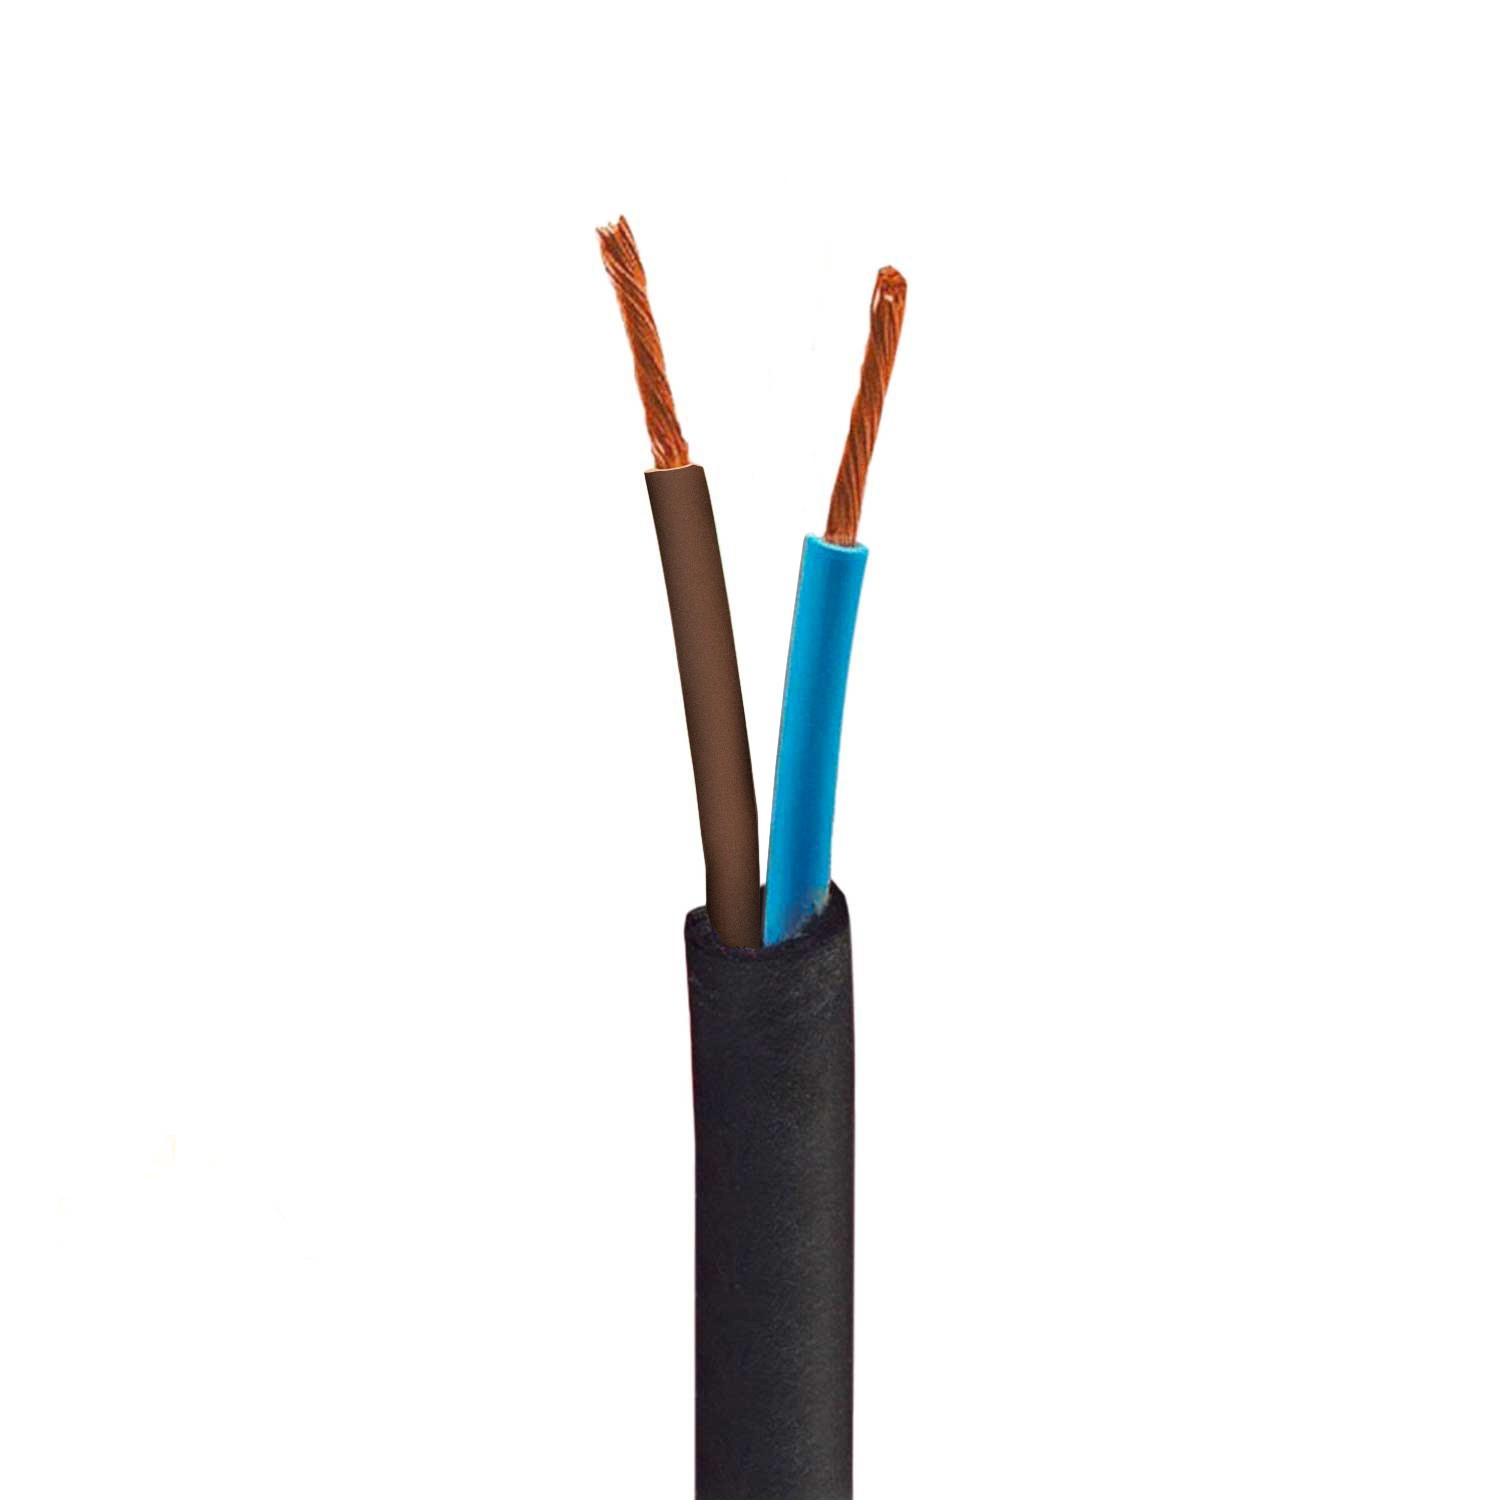 Vanjski okrugli električni kabel u boji jute SN06 - za EIVA sistem IP65